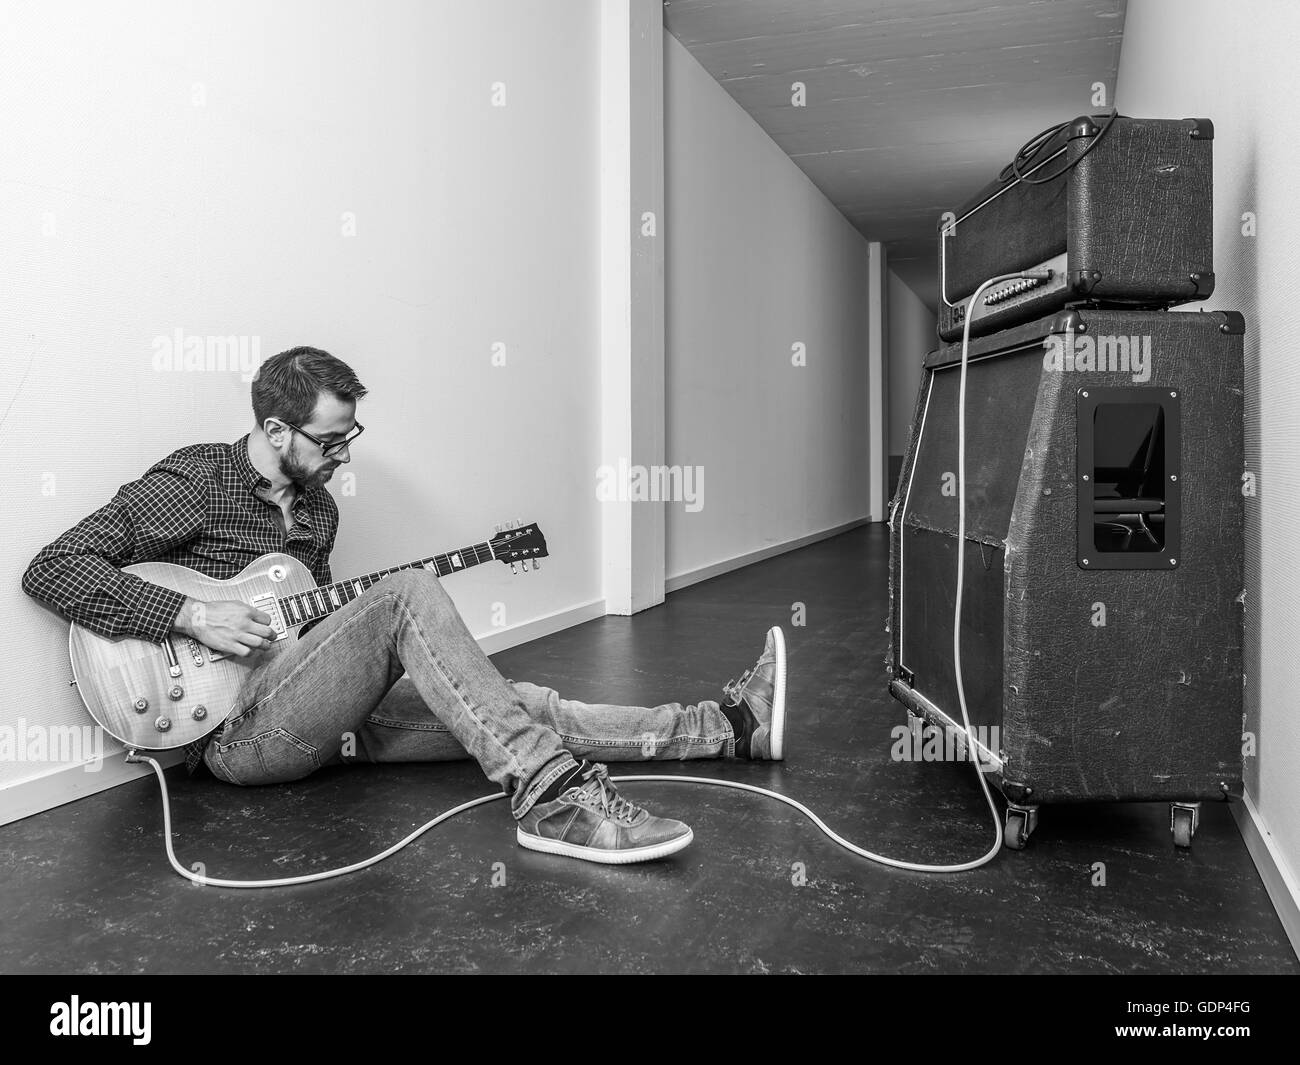 Foto eines sitzenden Menschen spielen seine e-Gitarre vor einem großen  Verstärker in einem Flur. Schwarz-weiß-Version Stockfotografie - Alamy